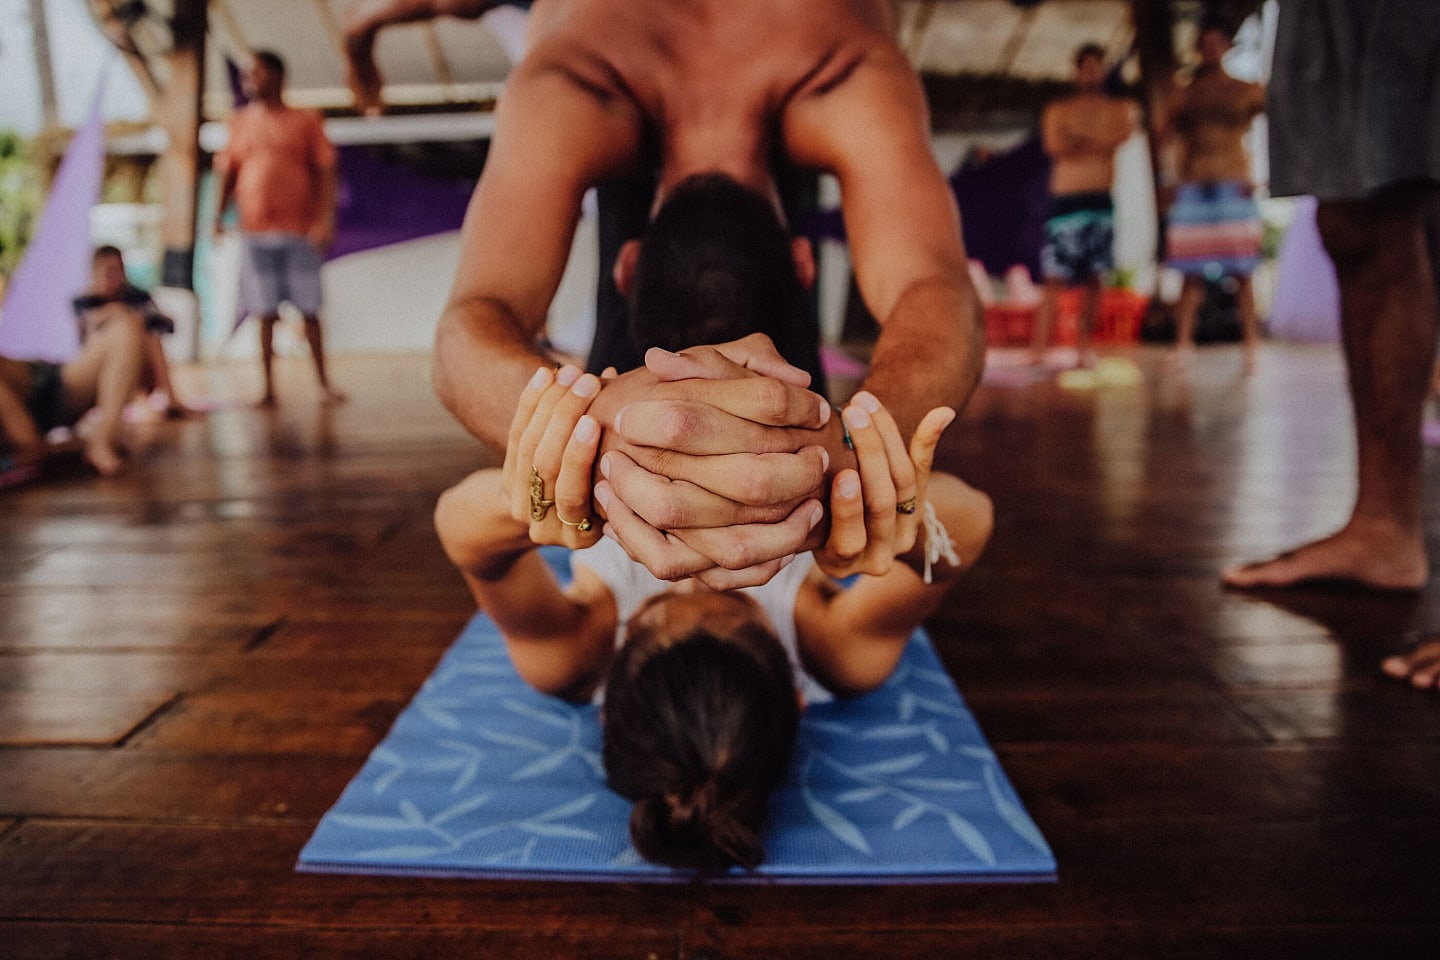 South Beach power yoga mat in brown